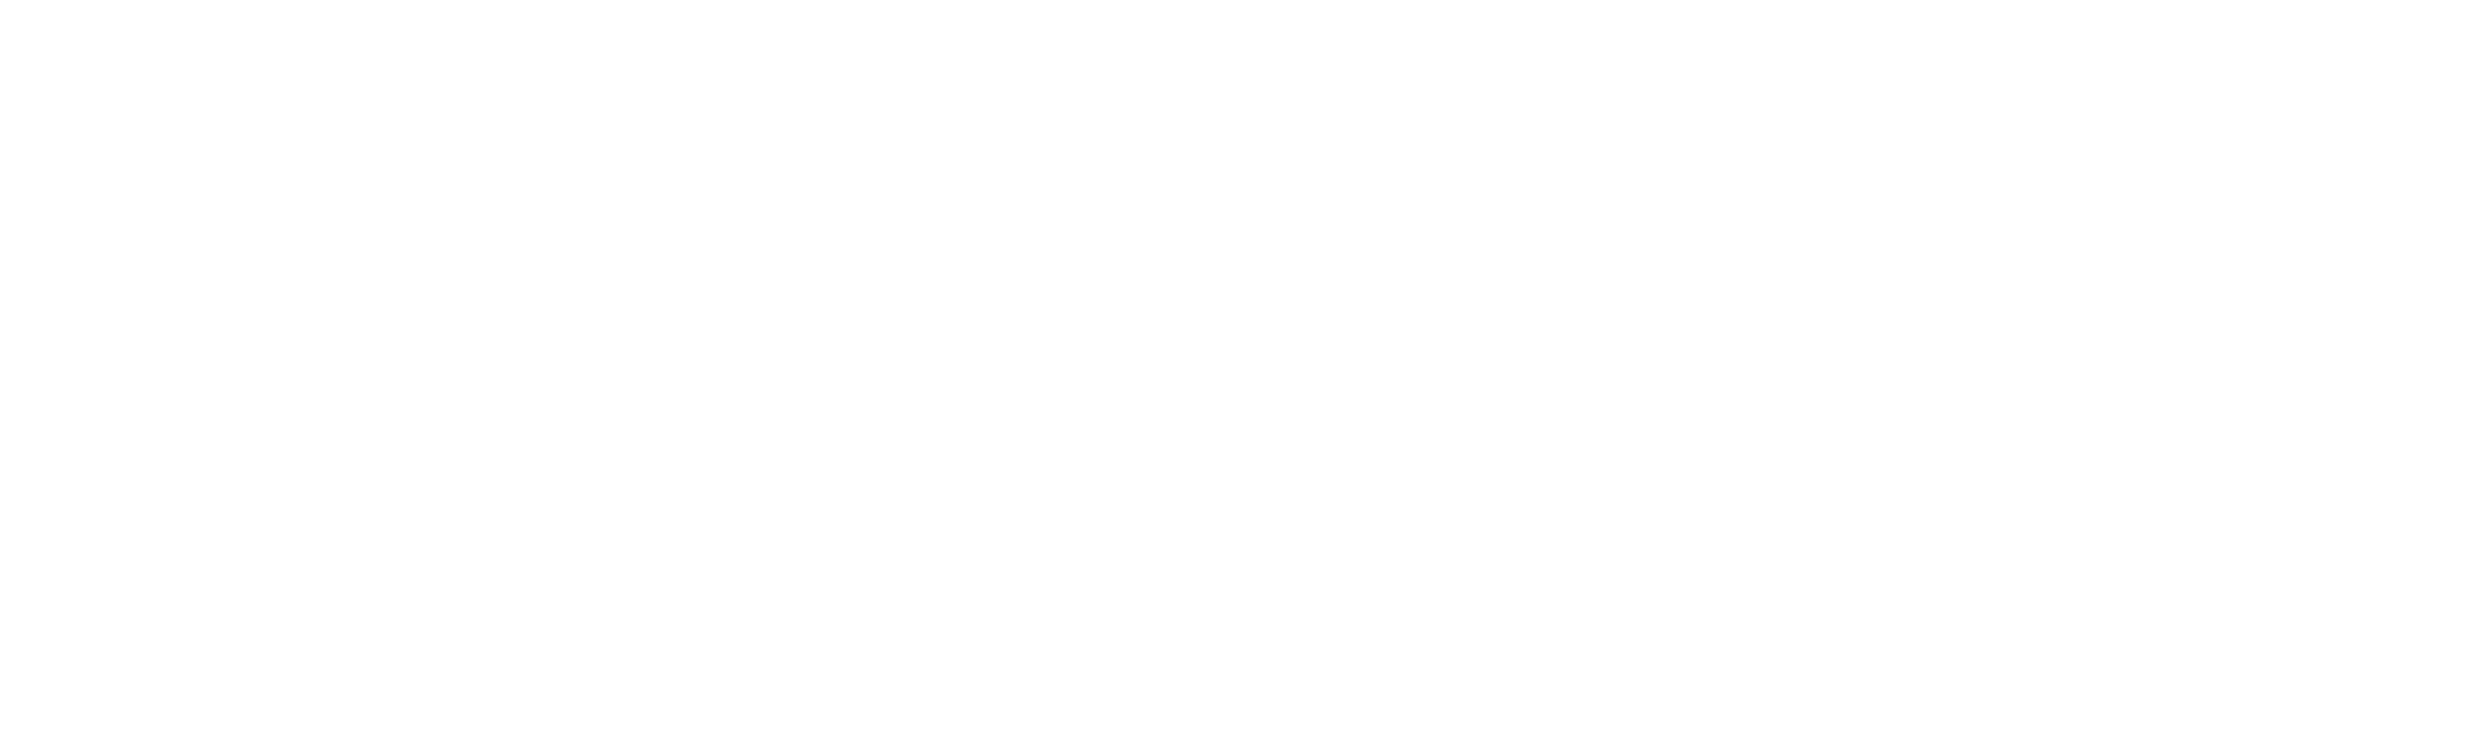 PGA White Logo